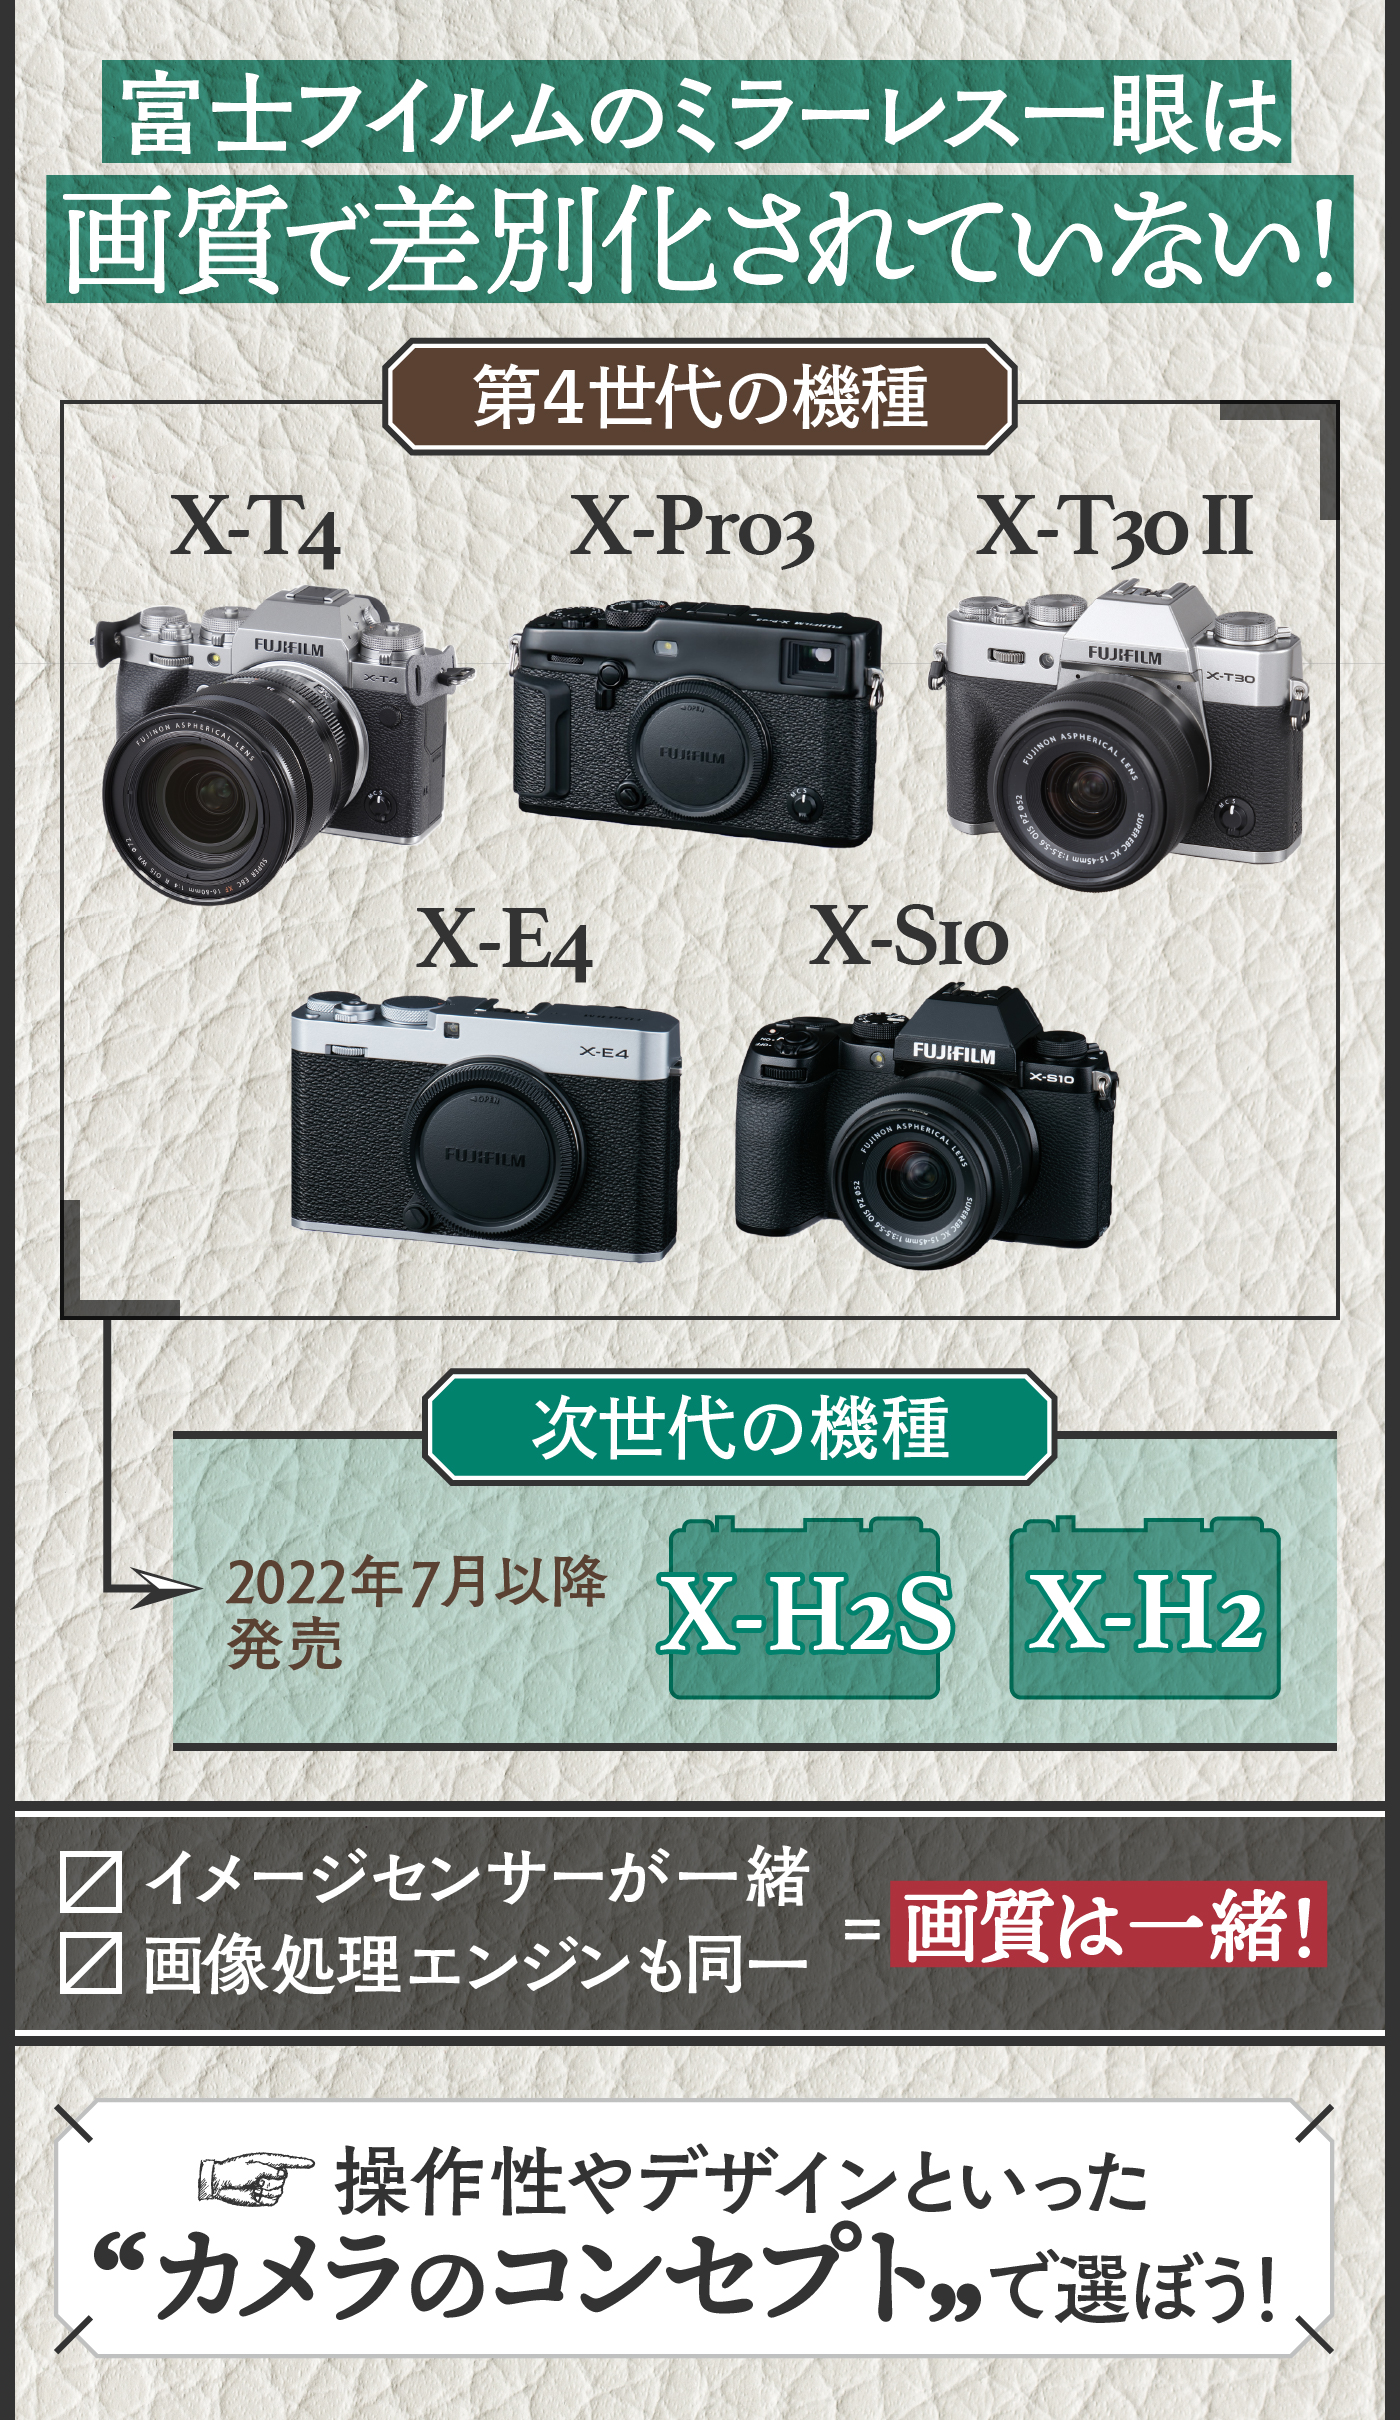 展示品保証書付 ミラーレス一眼カメラ X-A7レンズキット X-A7LK-S